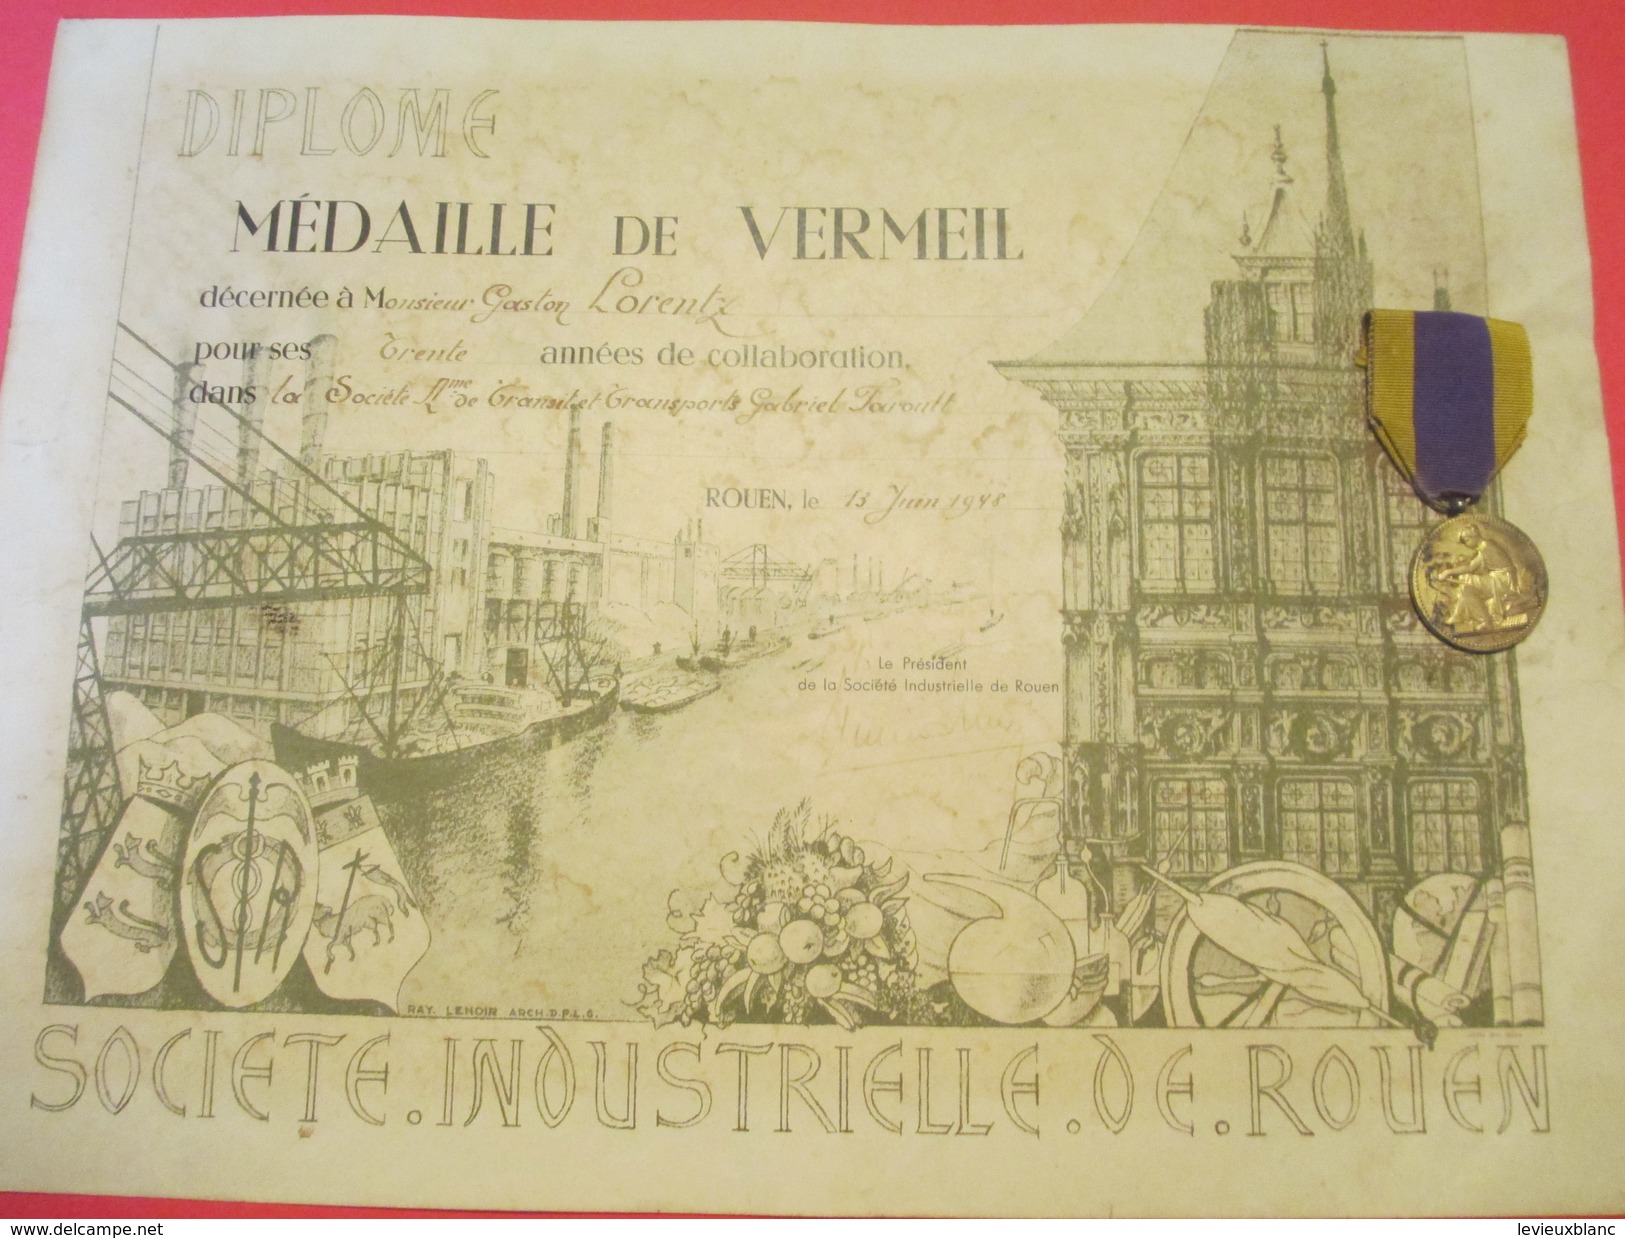 Diplôme/Société Industrielle De Rouen/ Médaille De Vermeil/30 Ans De Collaboration/Avec La Vraie Médaille/1948    DIP174 - Diplome Und Schulzeugnisse